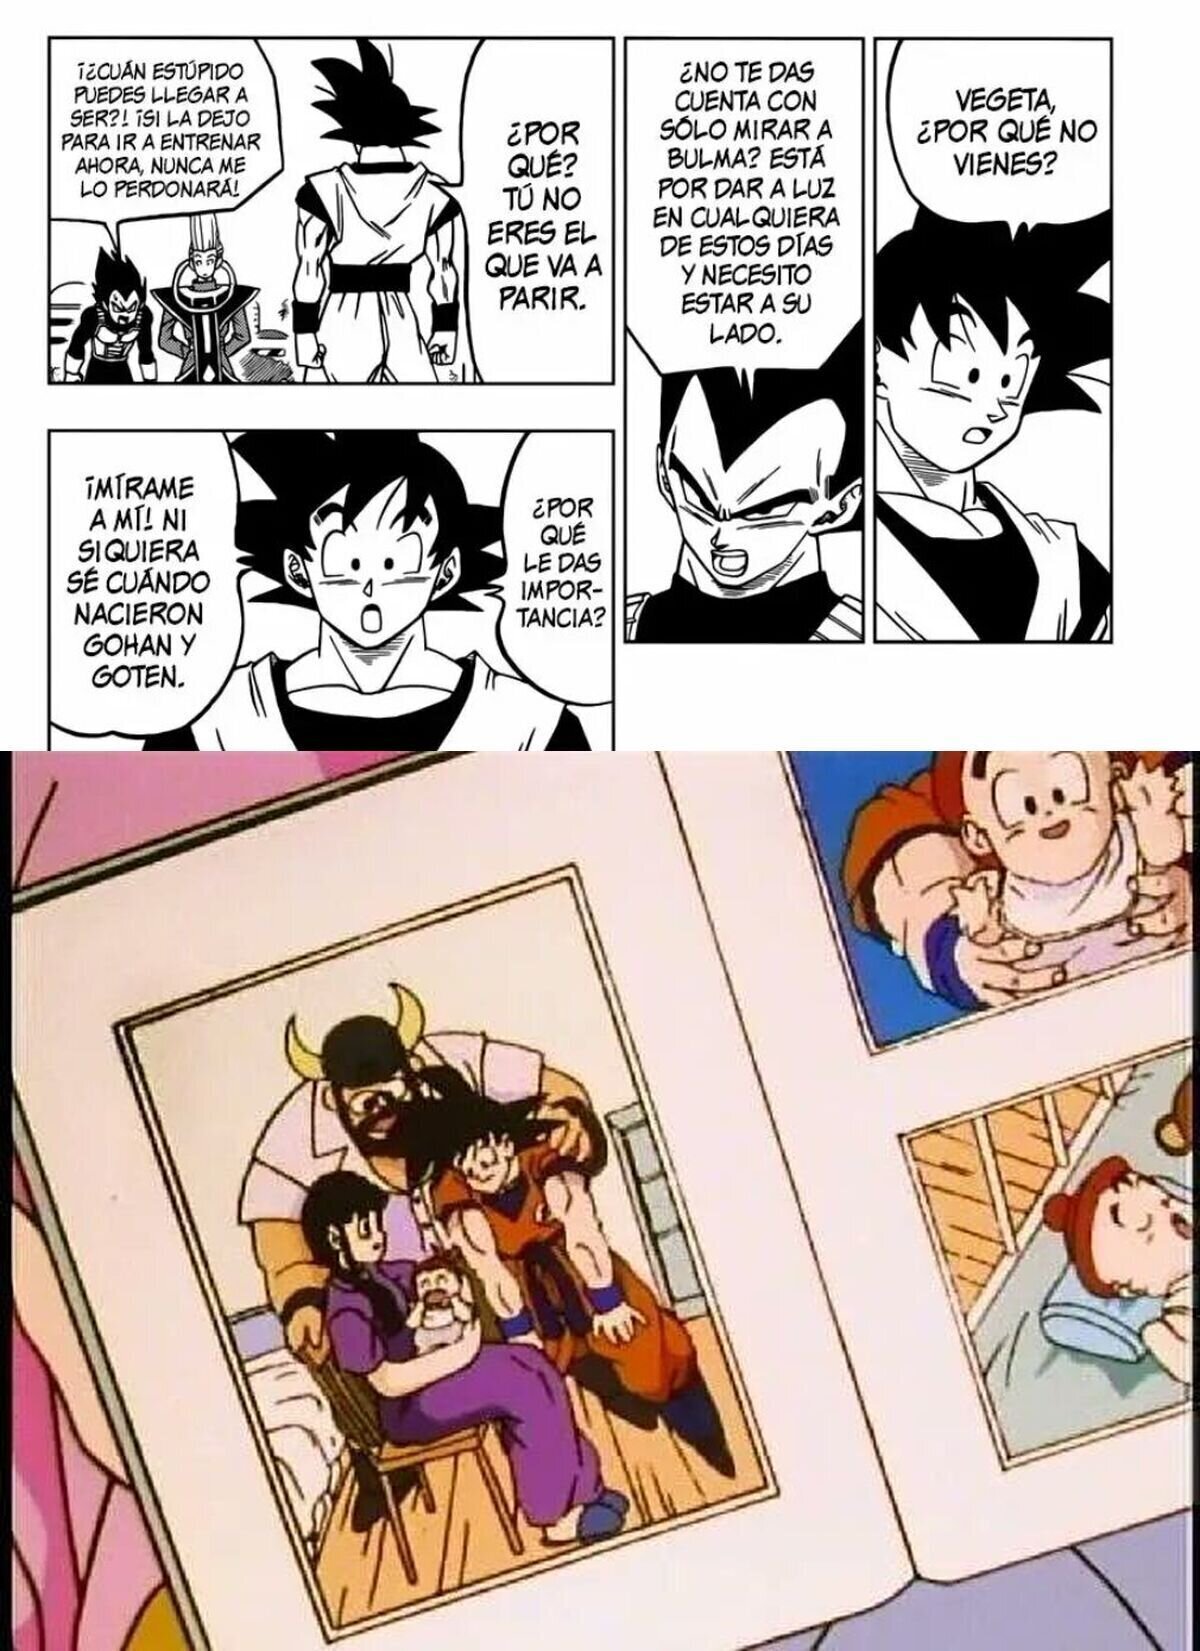 Goku en el manga de DBS VS Goku en un relleno de Toei animation